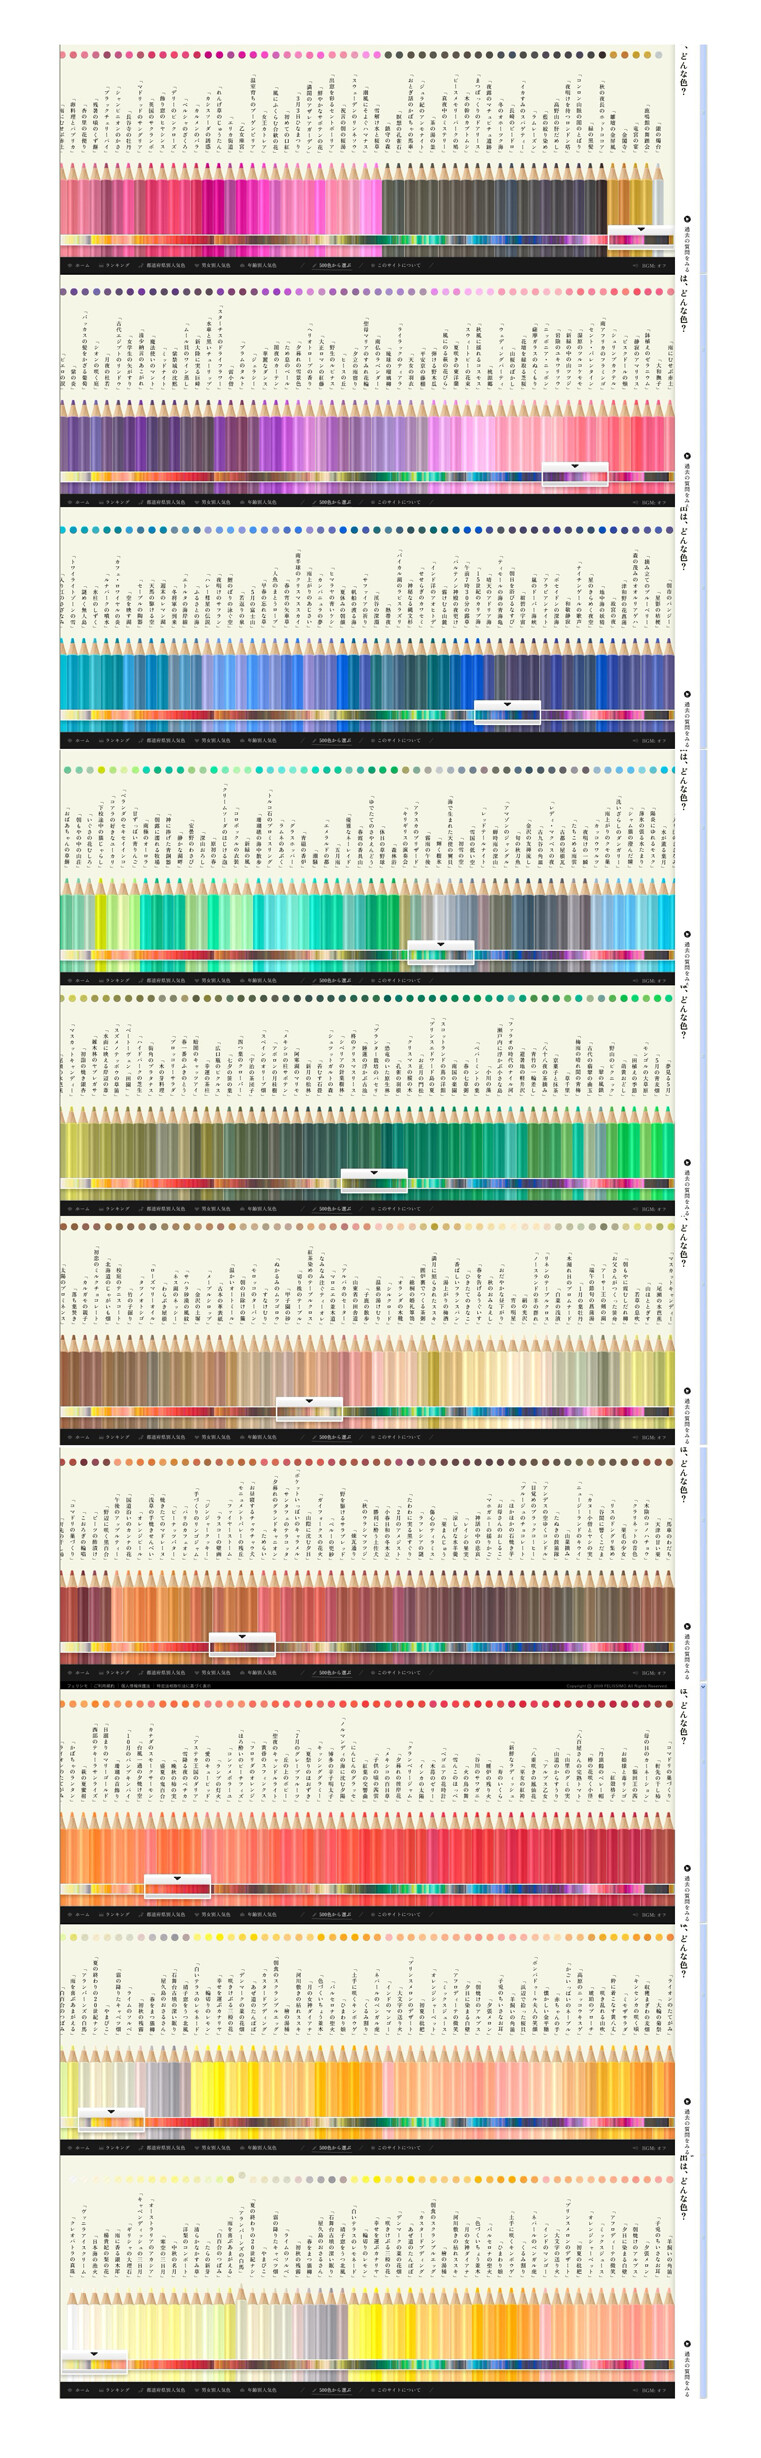 500色彩铅，其实具体我不知道网站是干嘛的，但是我猜他可以卖500色彩铅。Orz，求解答，日本网站地址http://info.felissimo.jp/contents/colors/question/